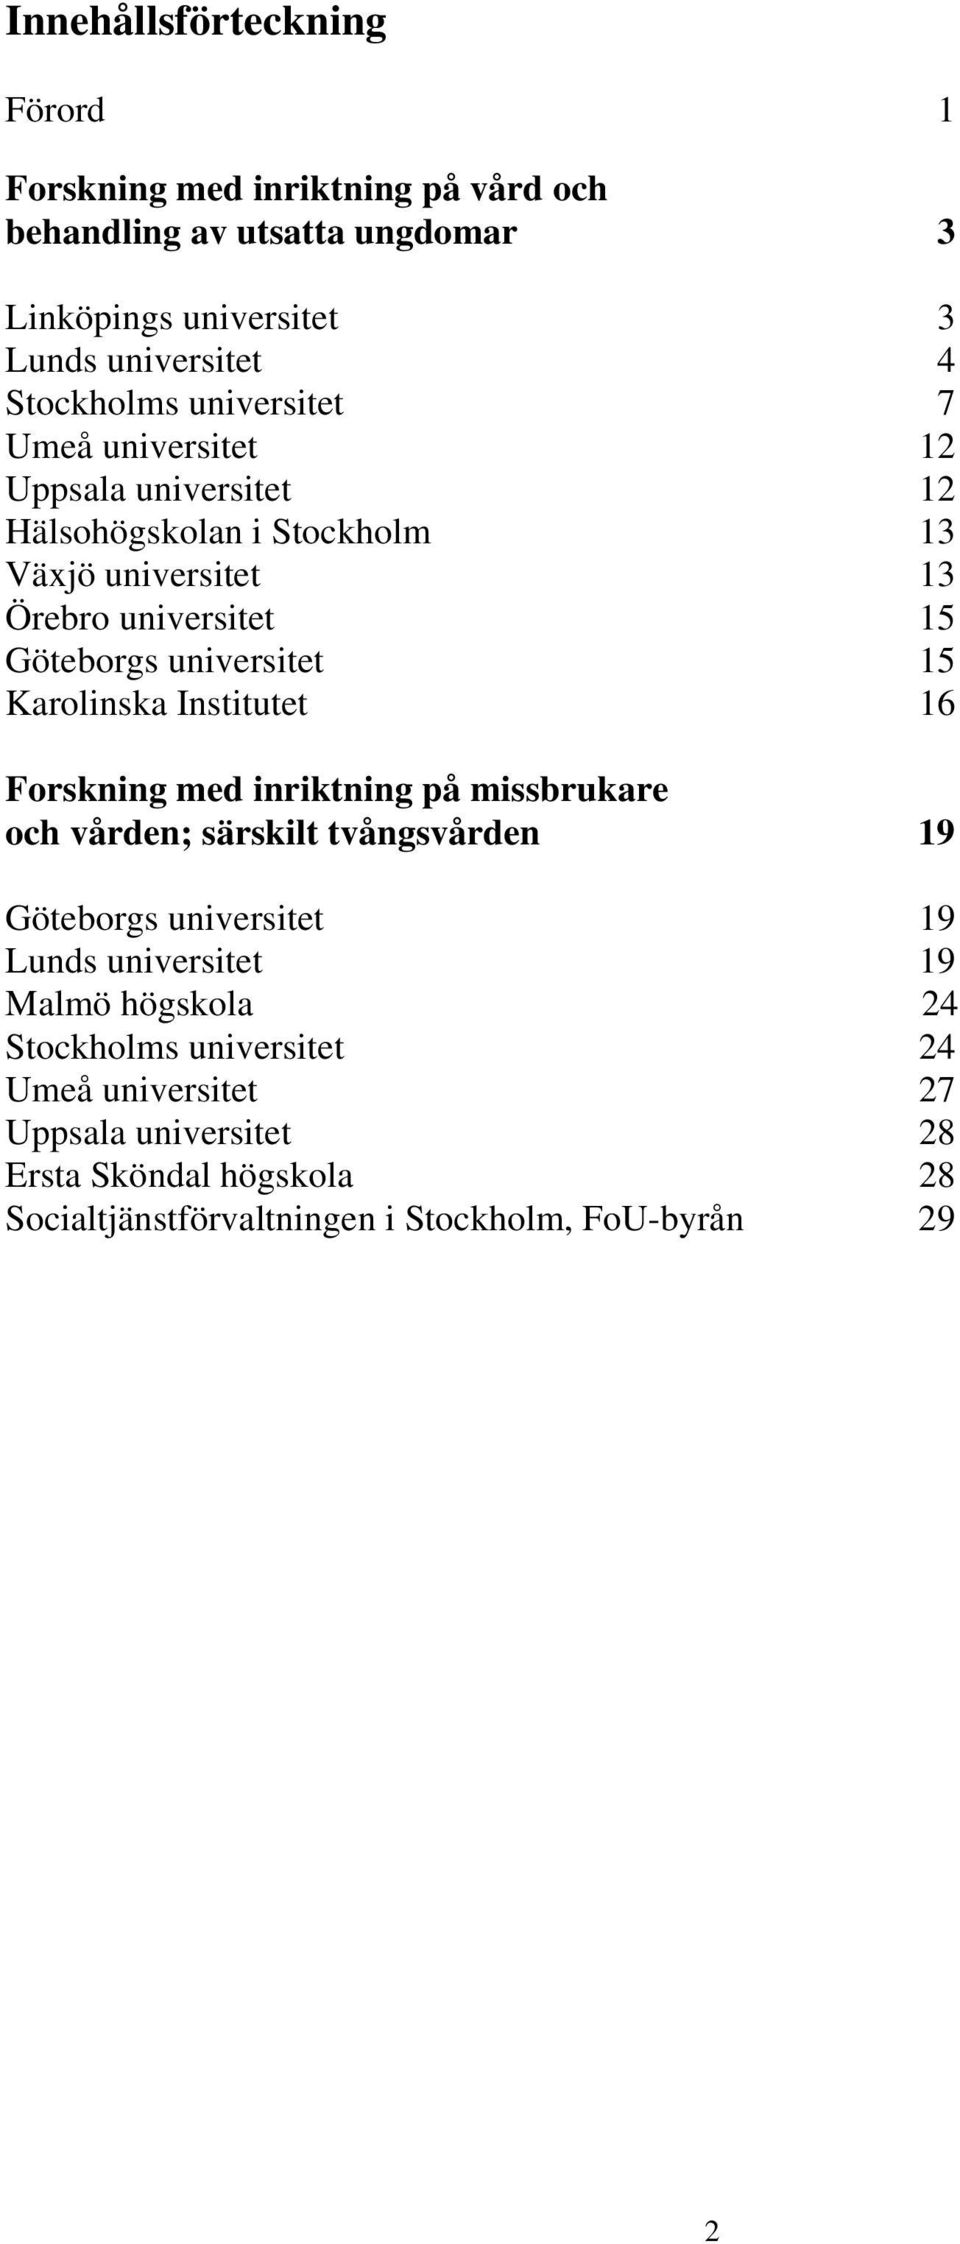 Karolinska Institutet 16 Forskning med inriktning på missbrukare och vården; särskilt tvångsvården 19 Göteborgs universitet 19 Lunds universitet 19 Malmö